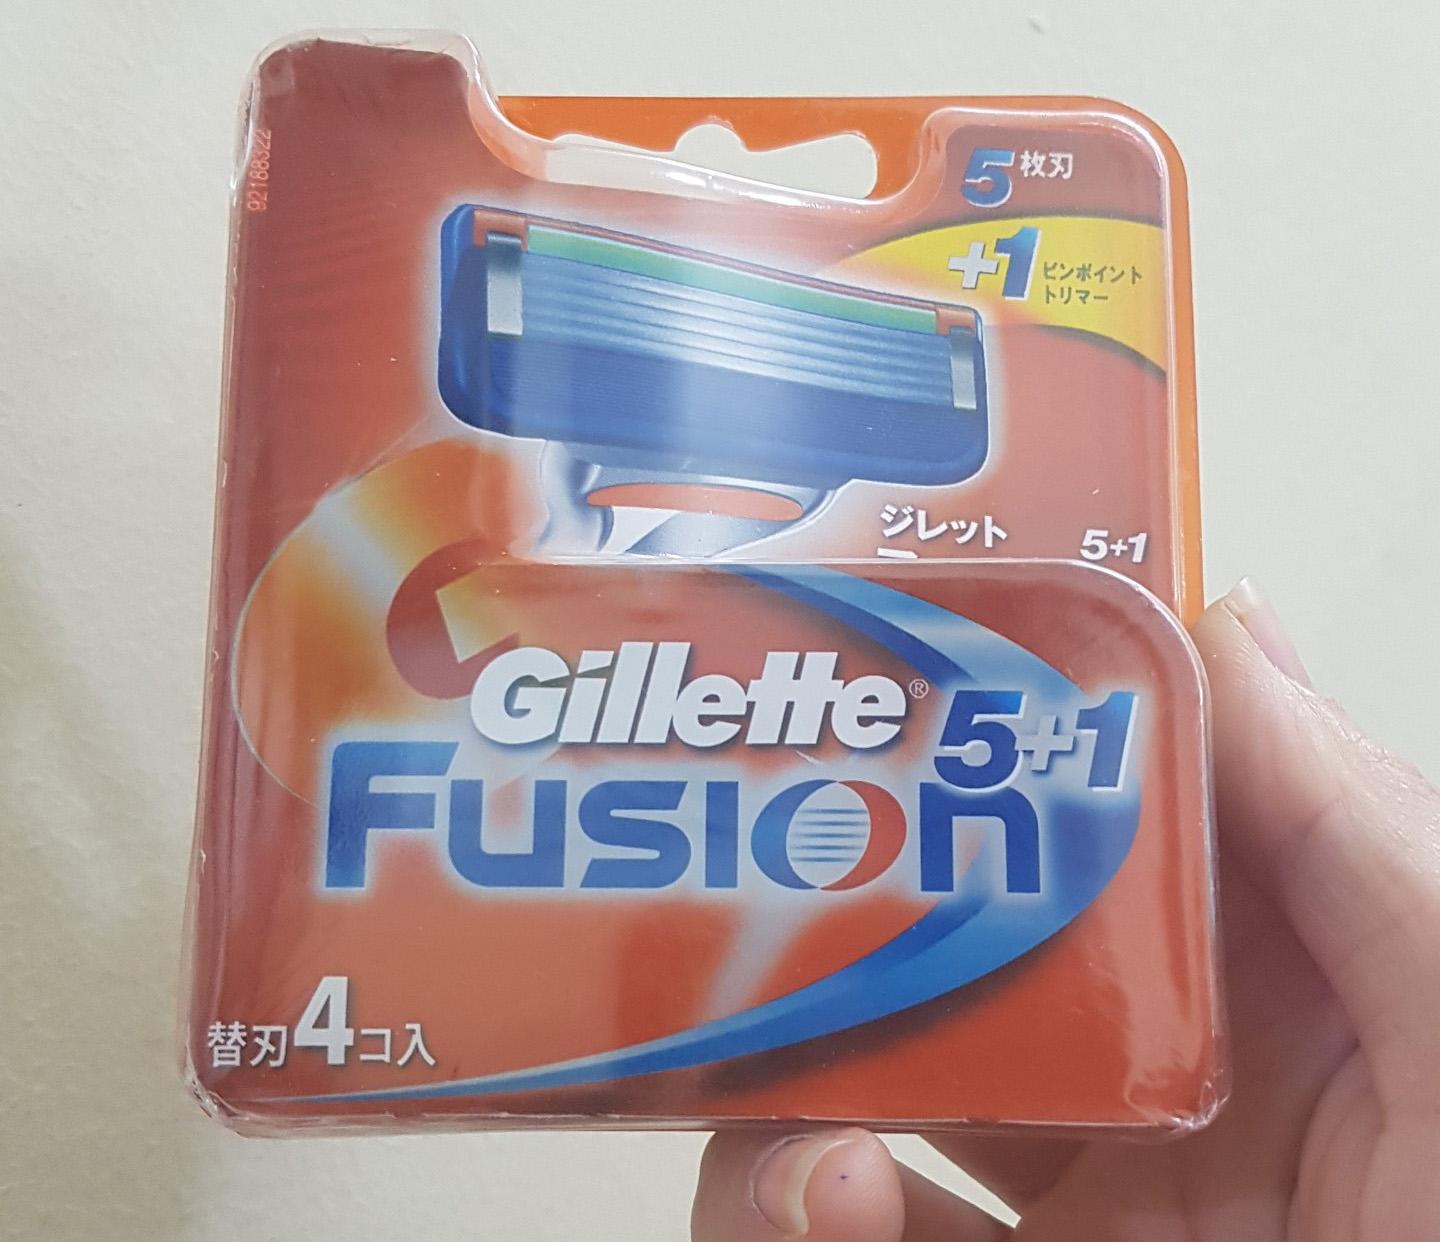 dao cạo râu gillette fusion proglide 5 lưỡi, Lưỡi dao cạo râu Gillette Fusion Proglide, hiệu quả Lưỡi dao cạo râu Gillette Fusion Proglide